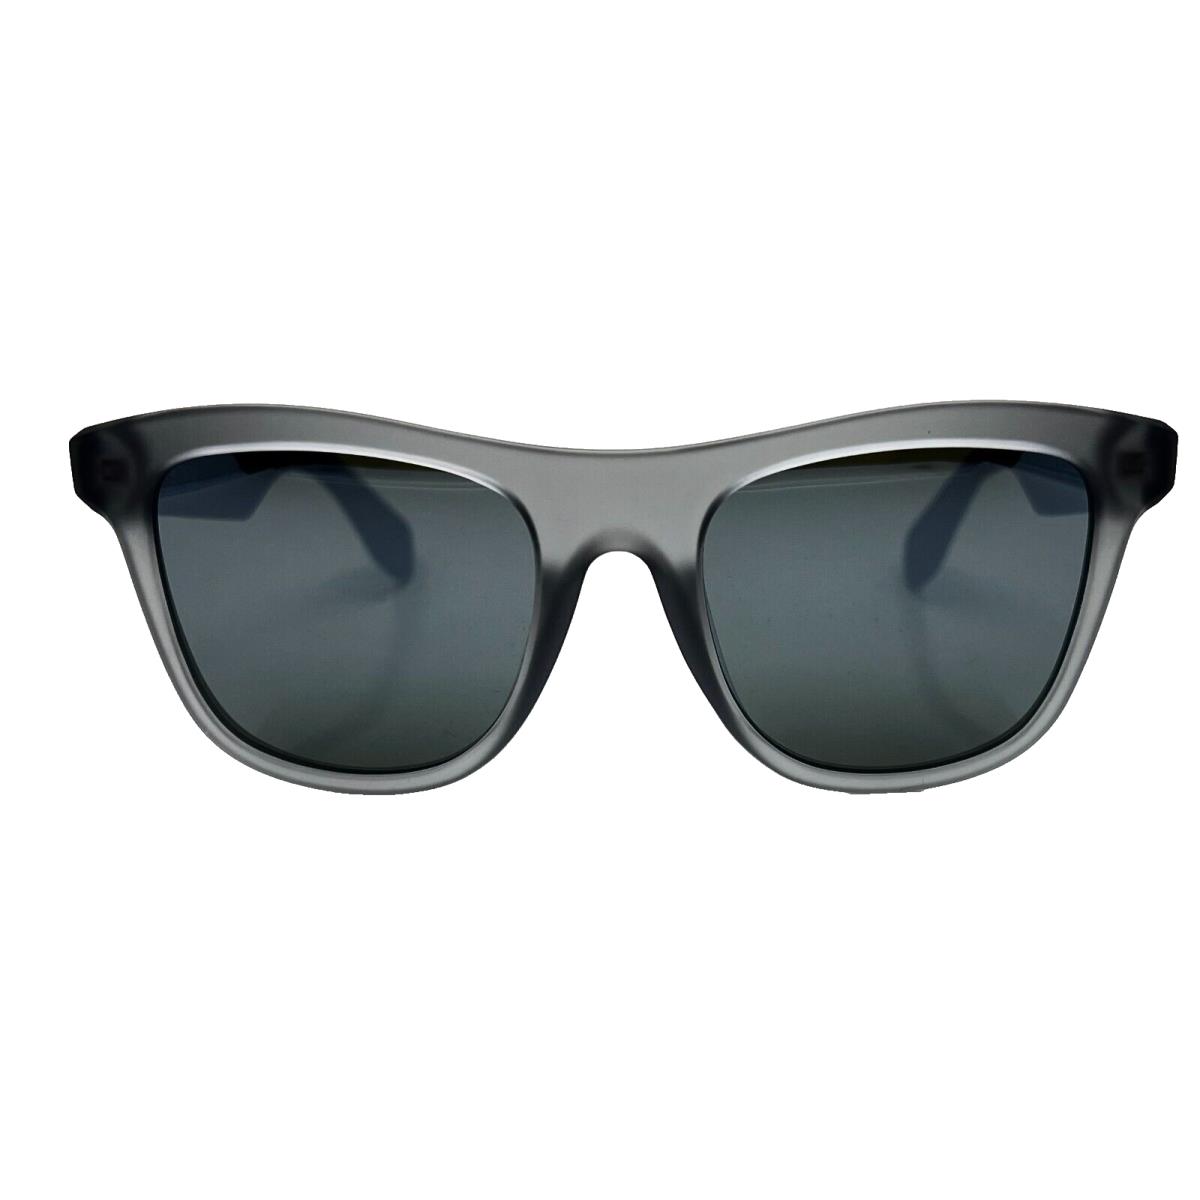 Adidas Originals - OR0057 20Q 53/20/145 - Grey - Sunglasses Case